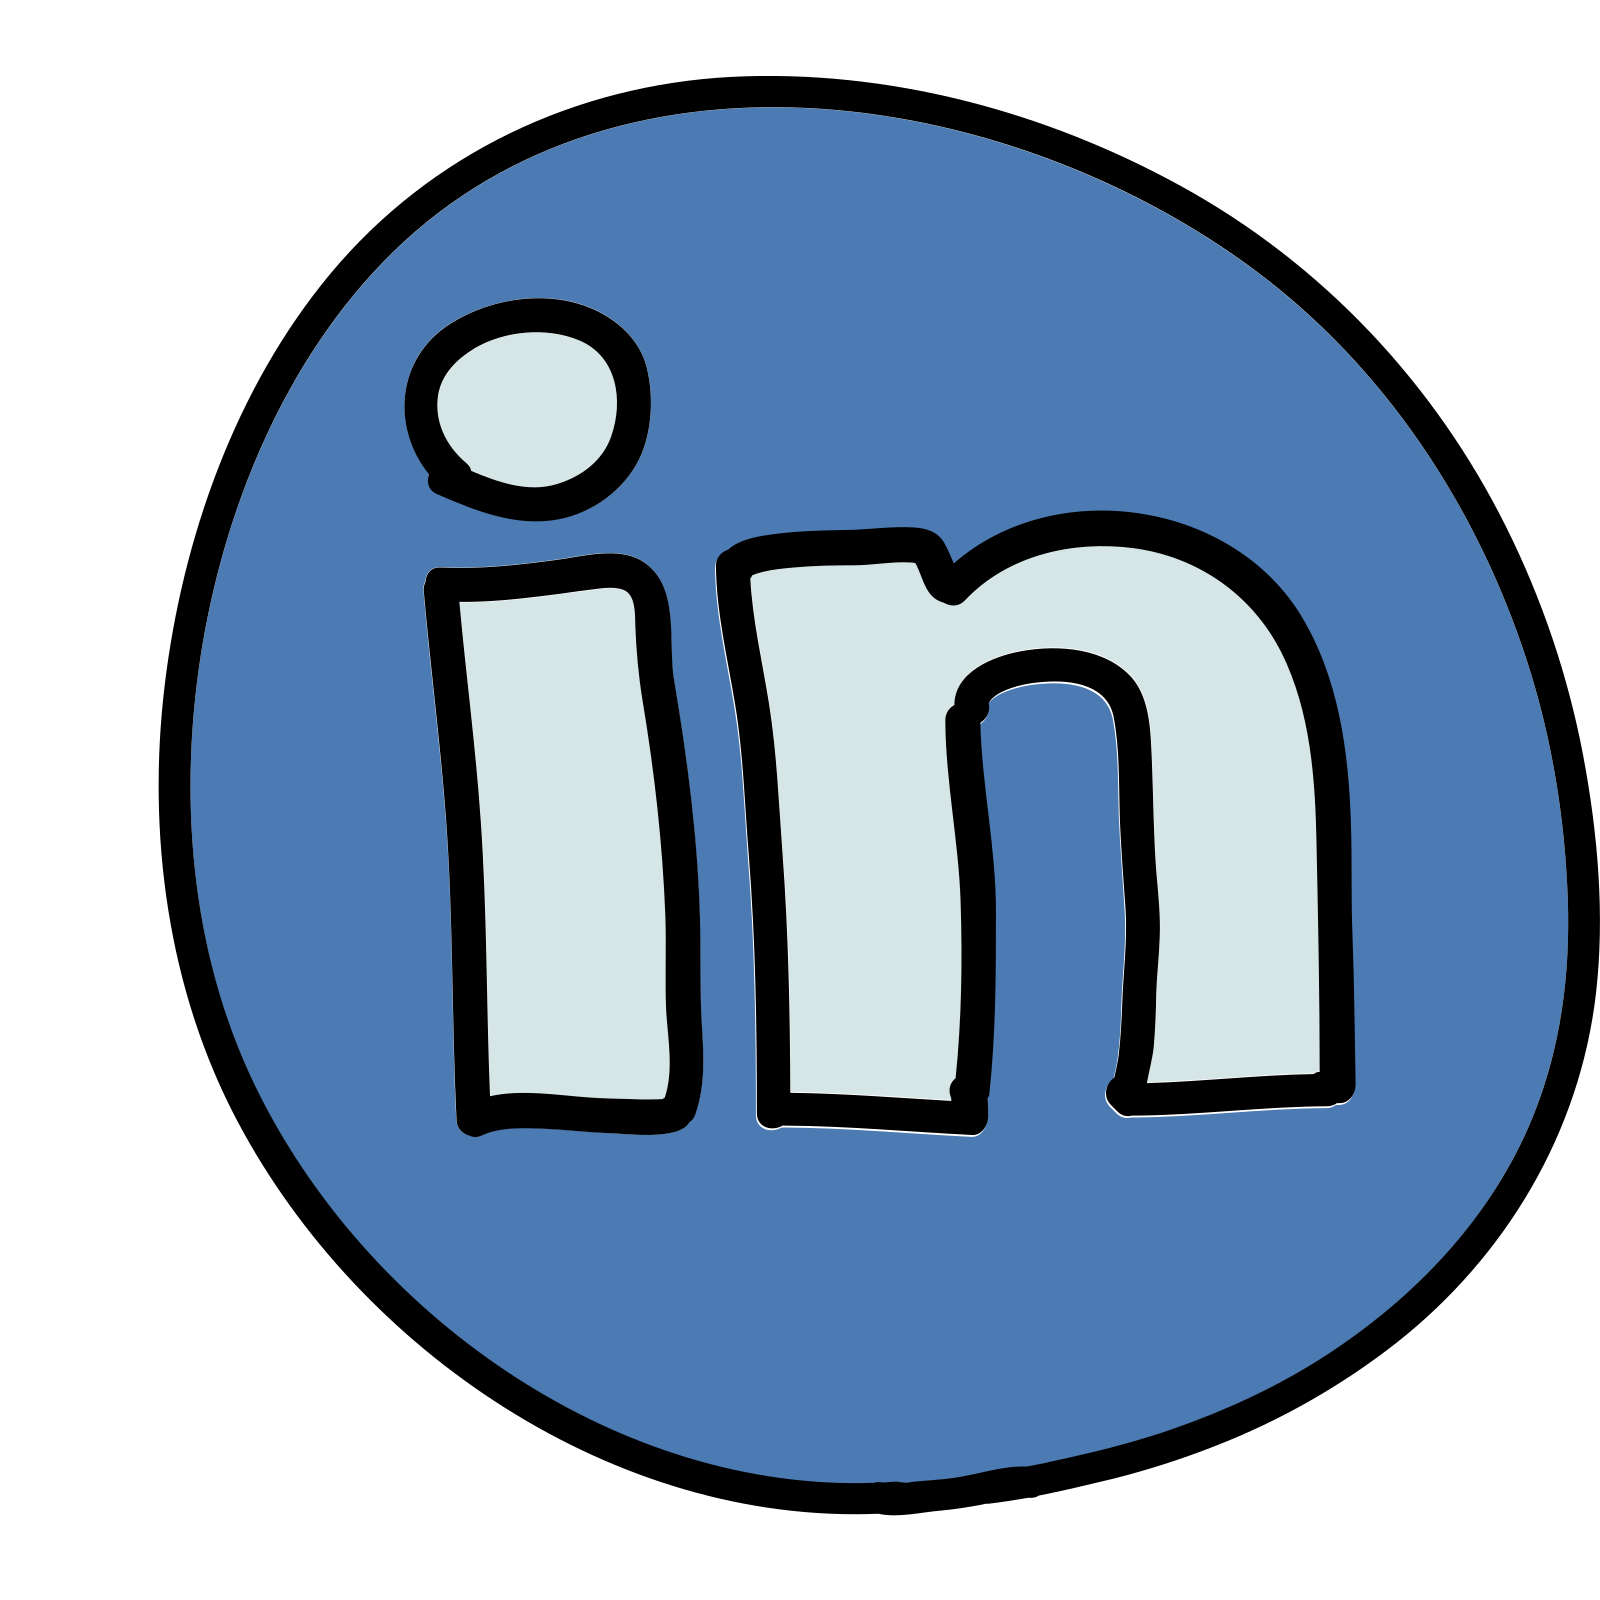 Résultat de recherche d'images pour "linkedin icone"